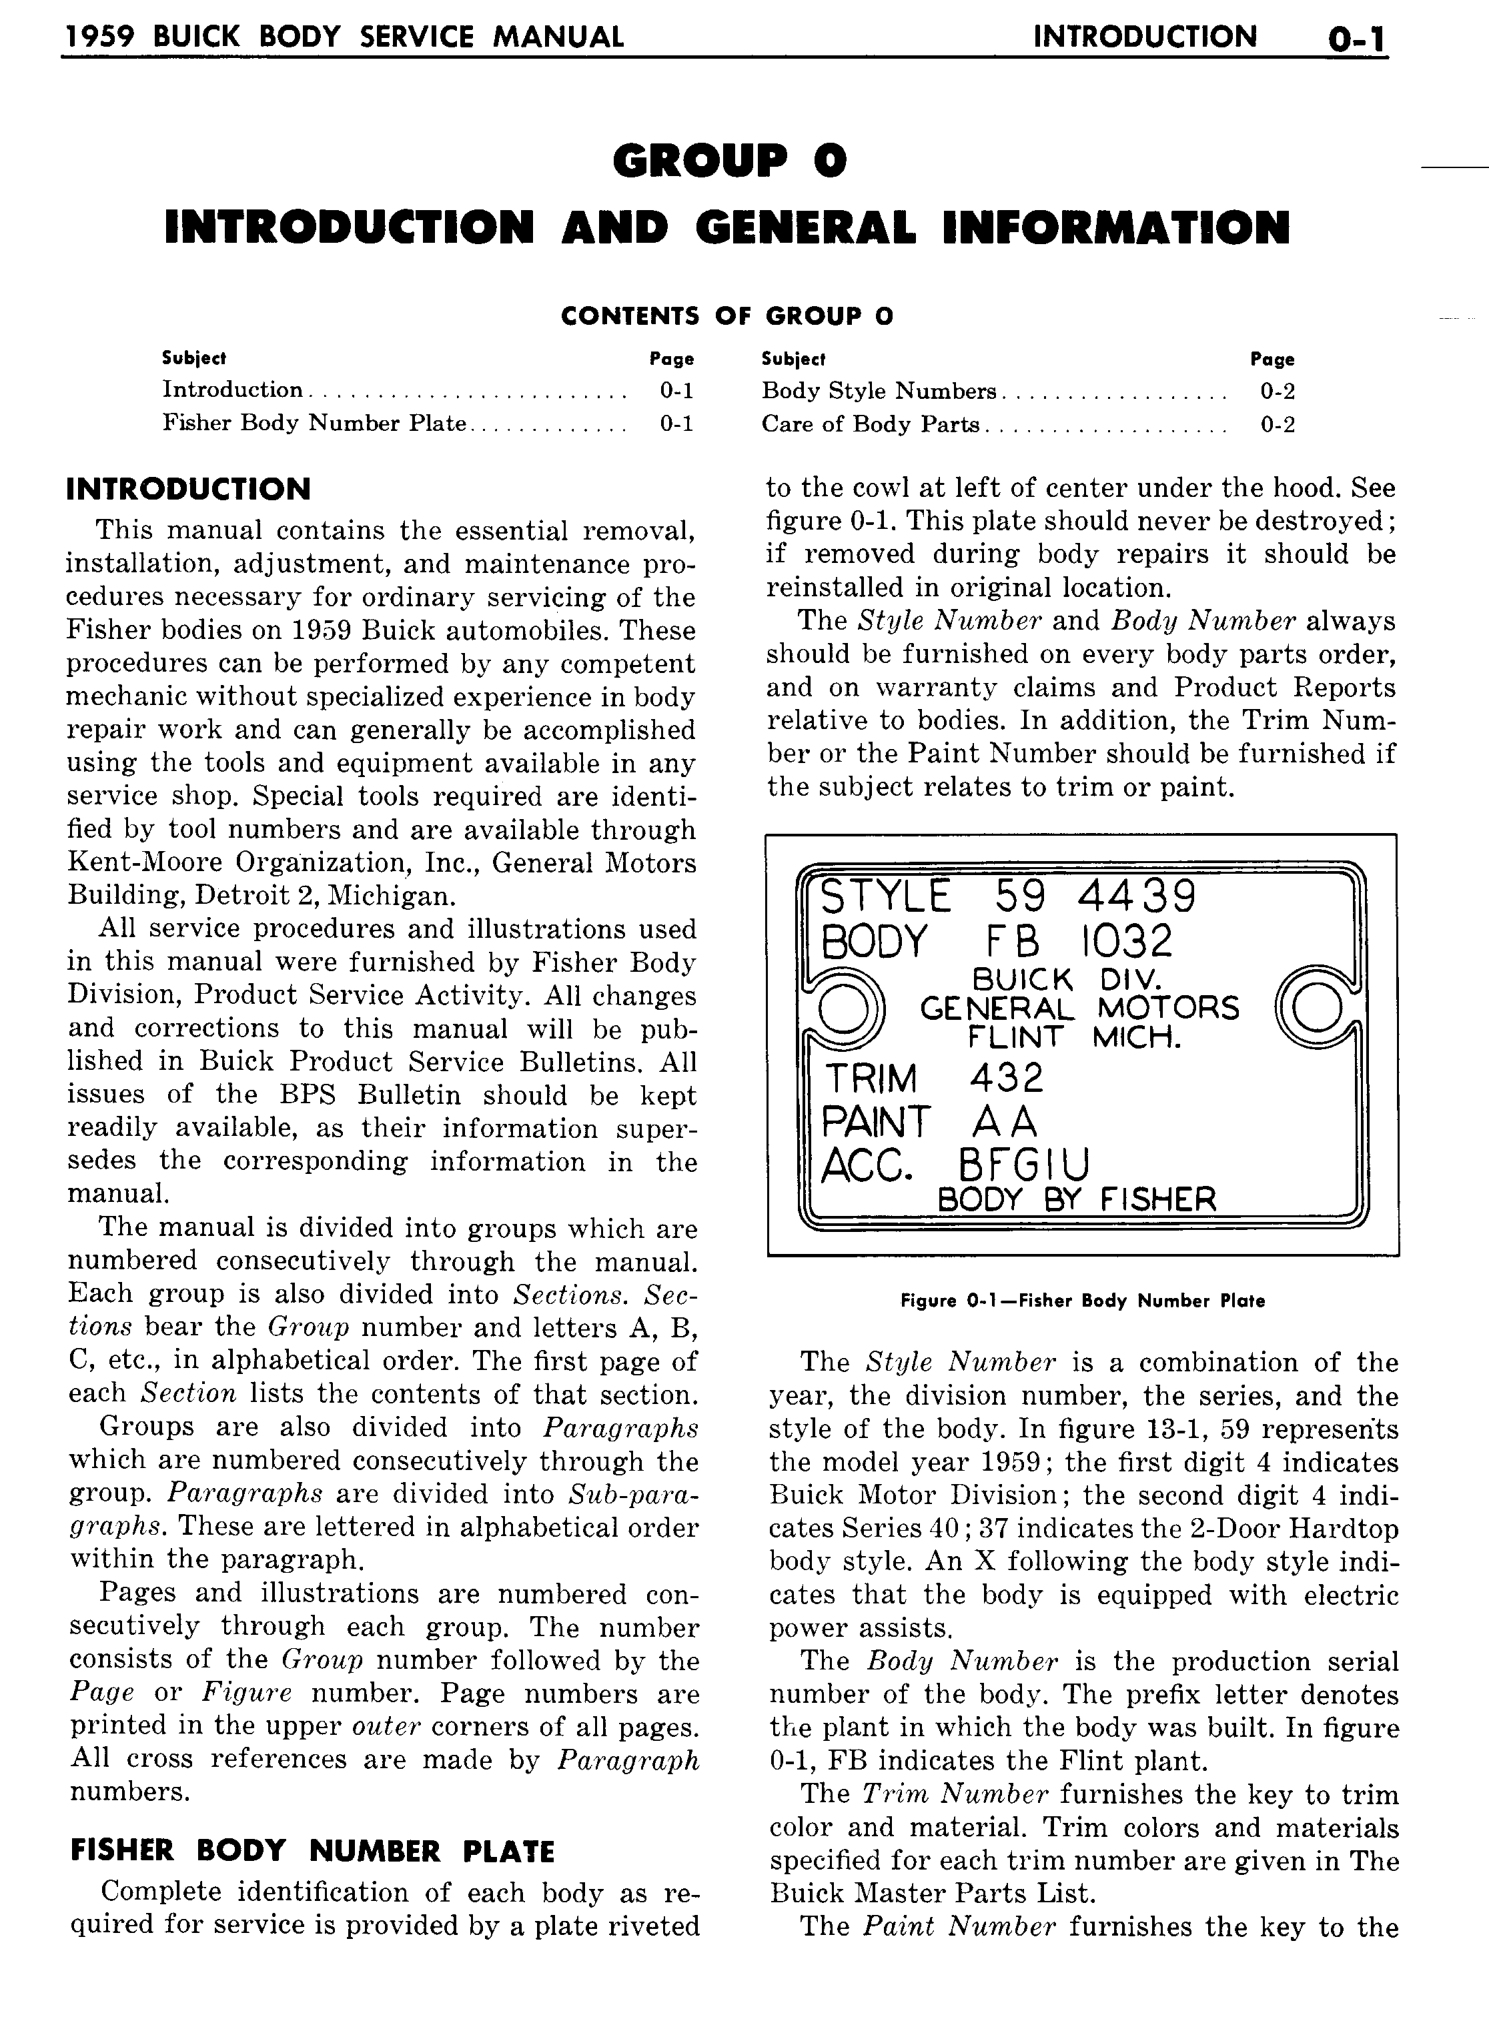 n_01 1959 Buick Body Service-Gen Information_3.jpg